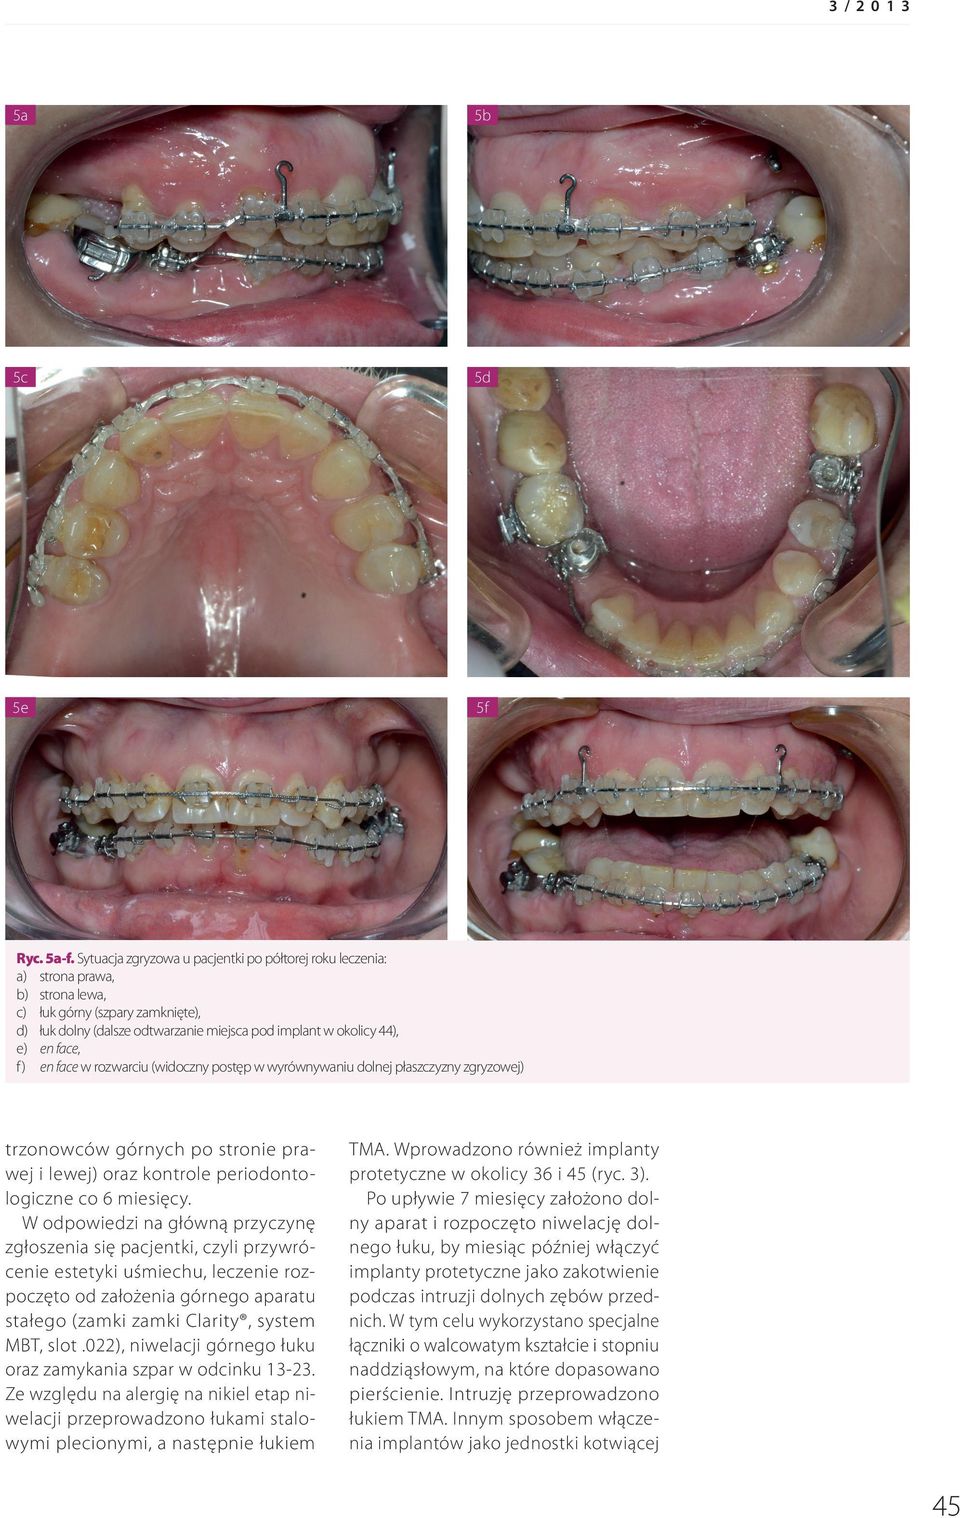 face, f) en face w rozwarciu (widoczny postęp w wyrównywaniu dolnej płaszczyzny zgryzowej) trzonowców górnych po stronie prawej i lewej) oraz kontrole periodontologiczne co 6 miesięcy.